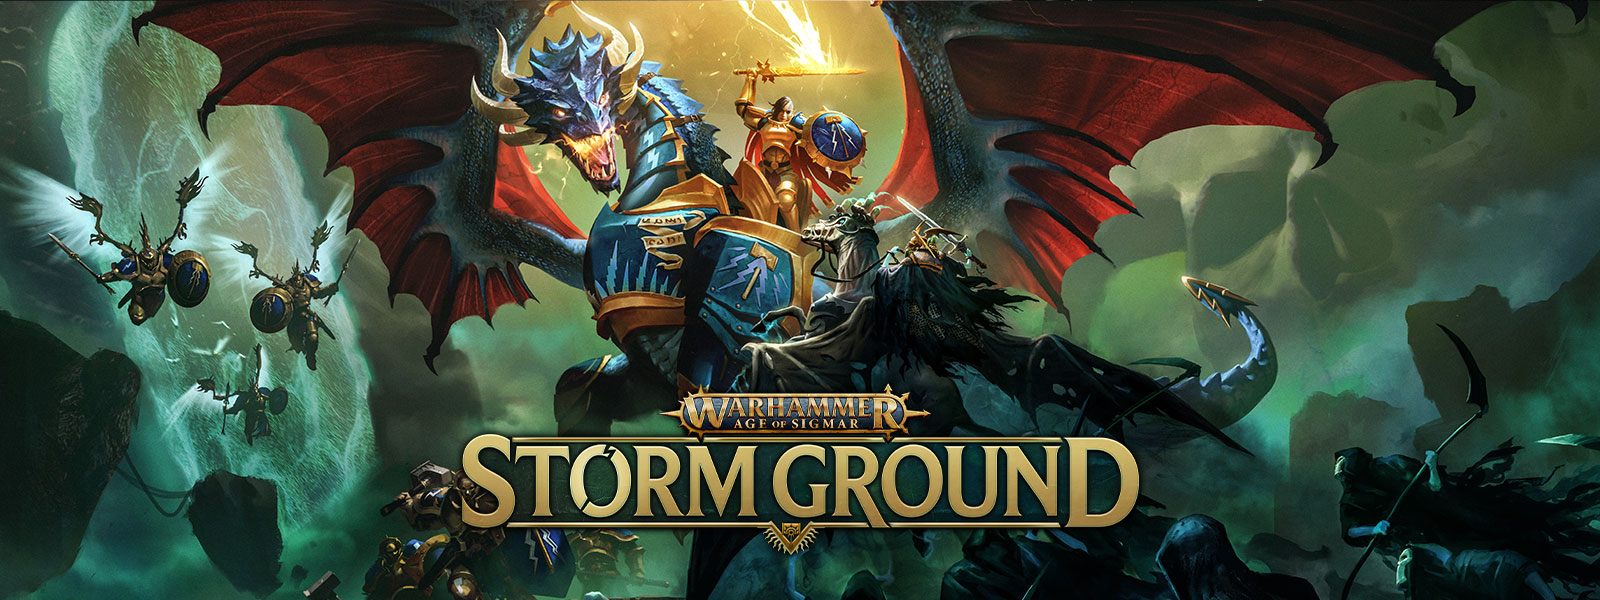 Warhammer Age of Sigmar: Storm Ground. Ein Krieger, der auf einem gepanzerten Drachen reitet, kämpft gegen eine Skelettarmee im Flug.